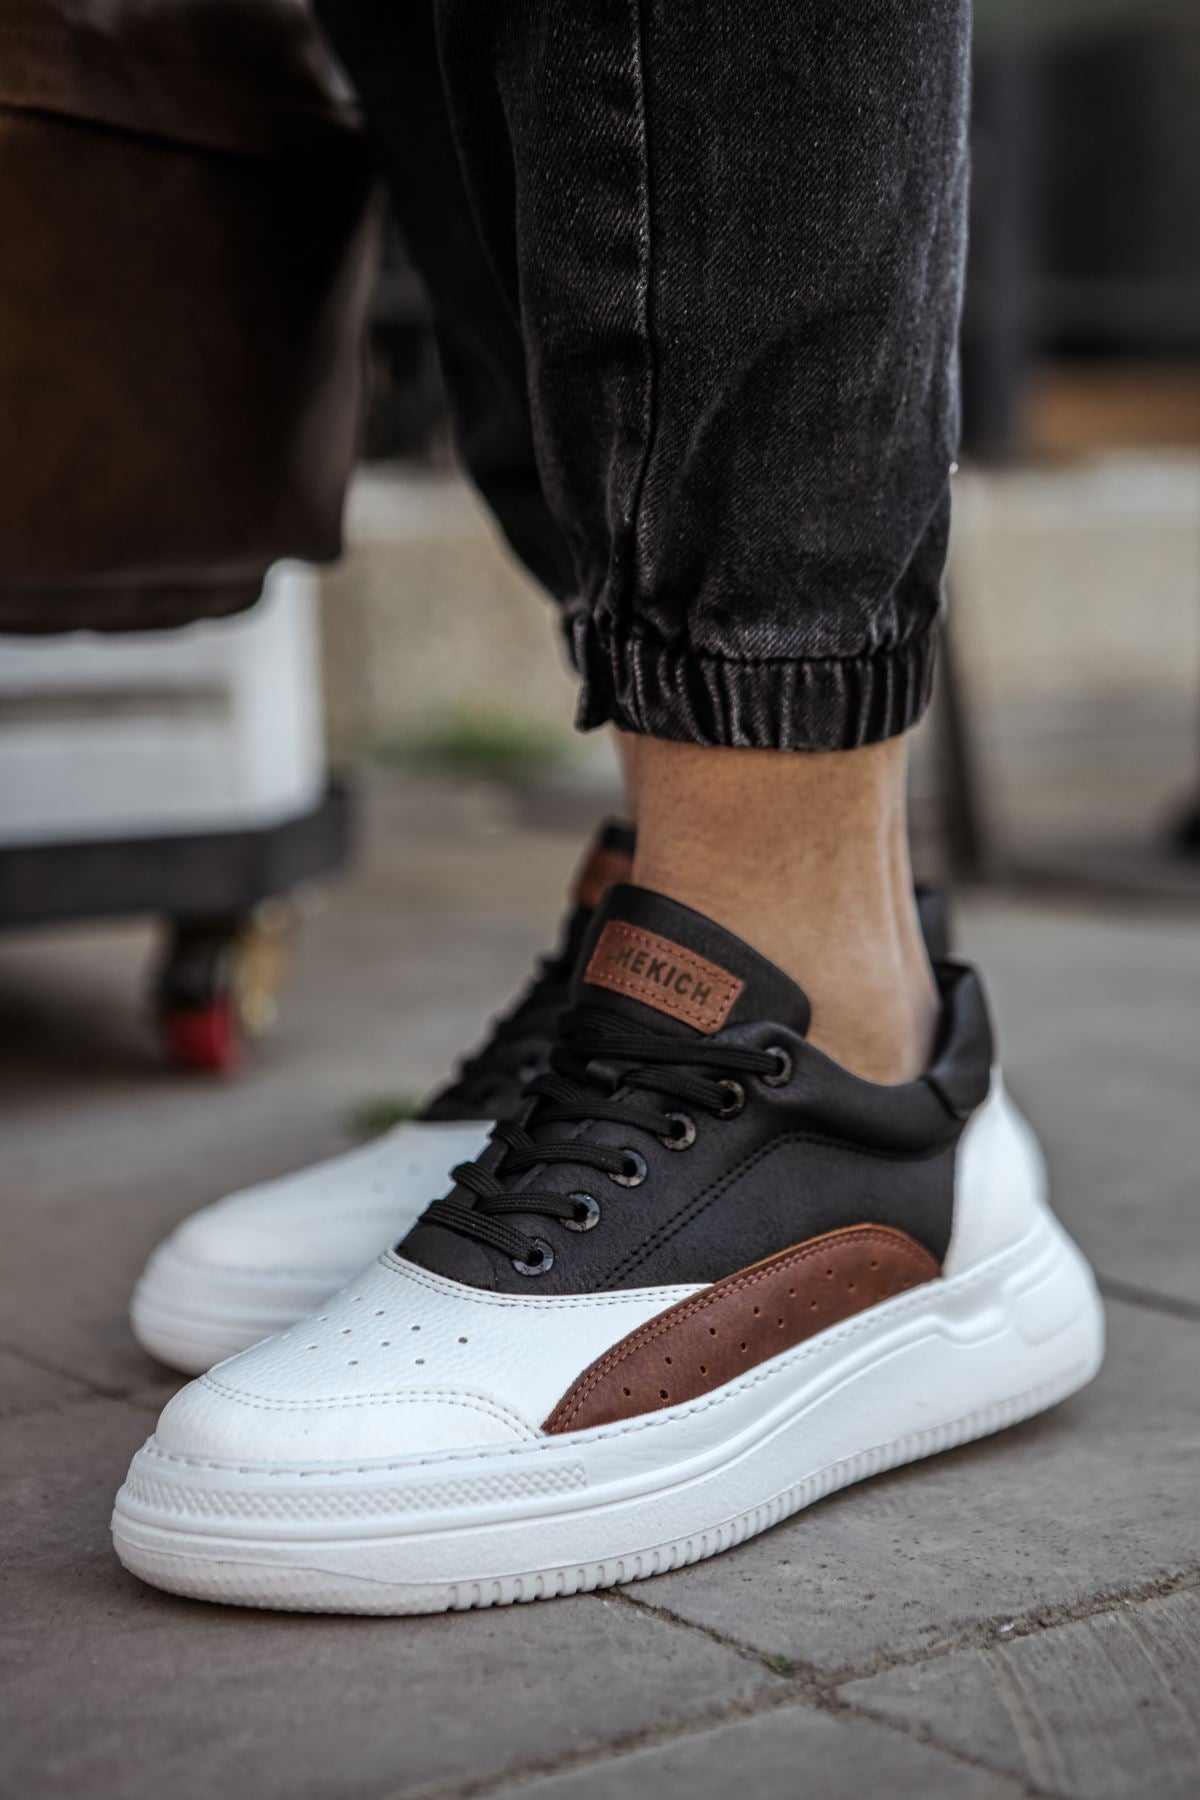 CH115 WS Men's Shoes WHITE / TAN / BLACK - STREETMODE ™